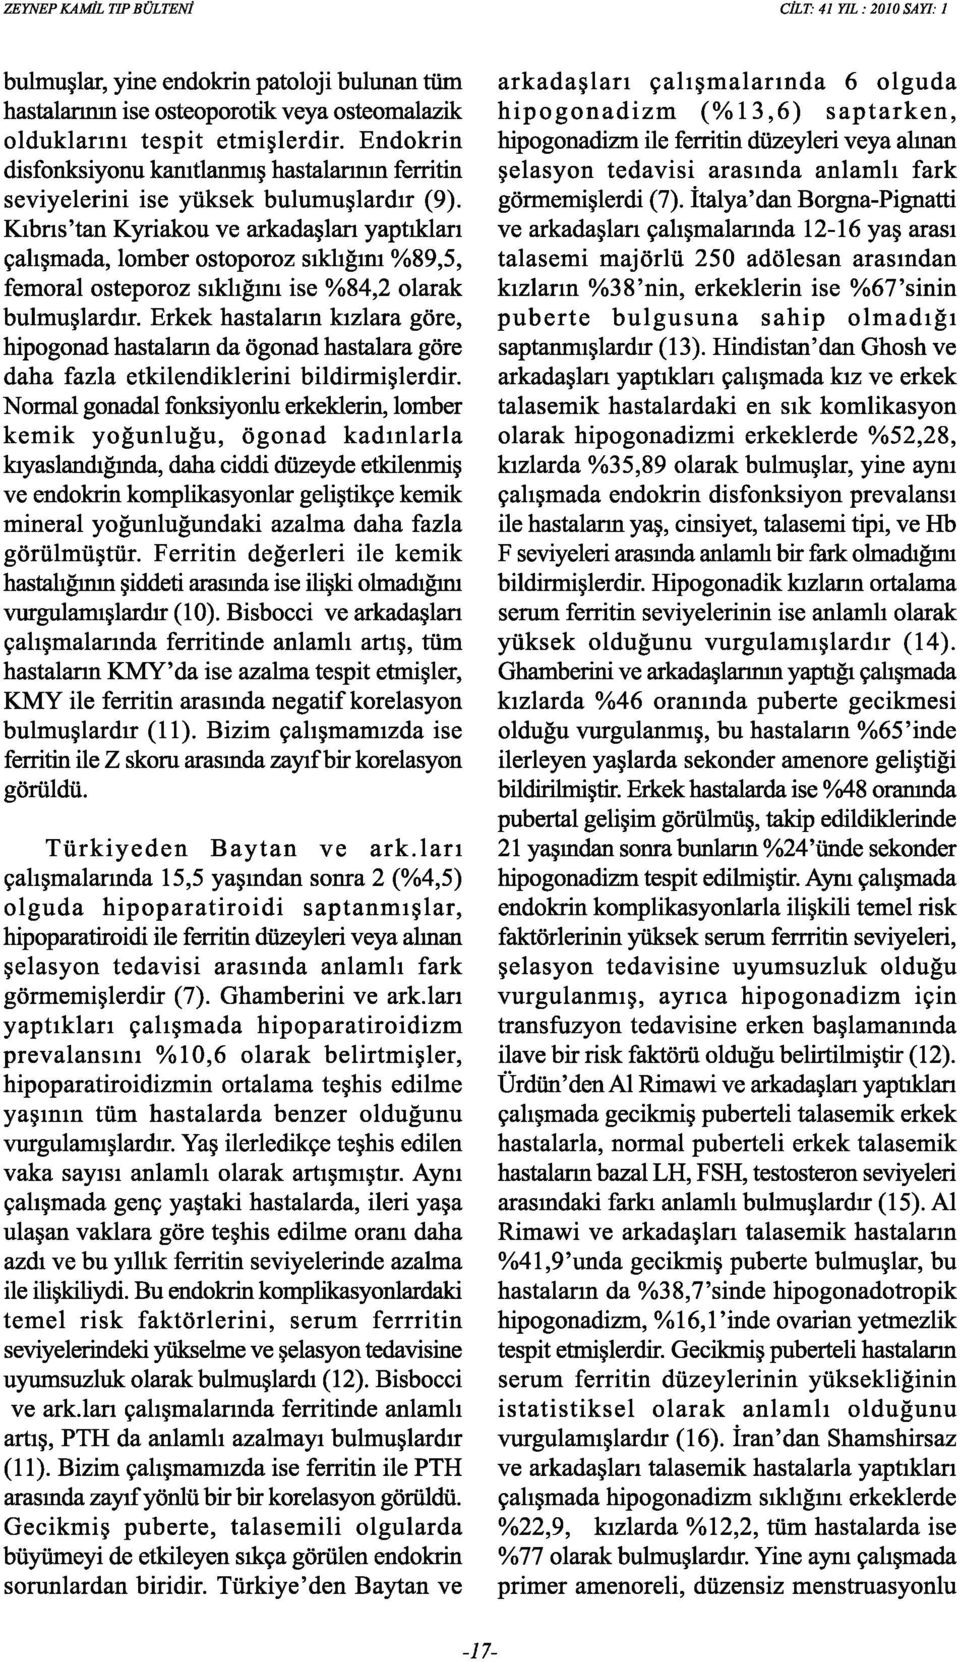 Kıbrıs'tan Kyriakou ve arkadaşları yaptıkları çalışmada, lomber ostoporoz sıklığını %89,5, femoral osteporoz sıklığını ise %84,2 olarak bulmuşlardır.